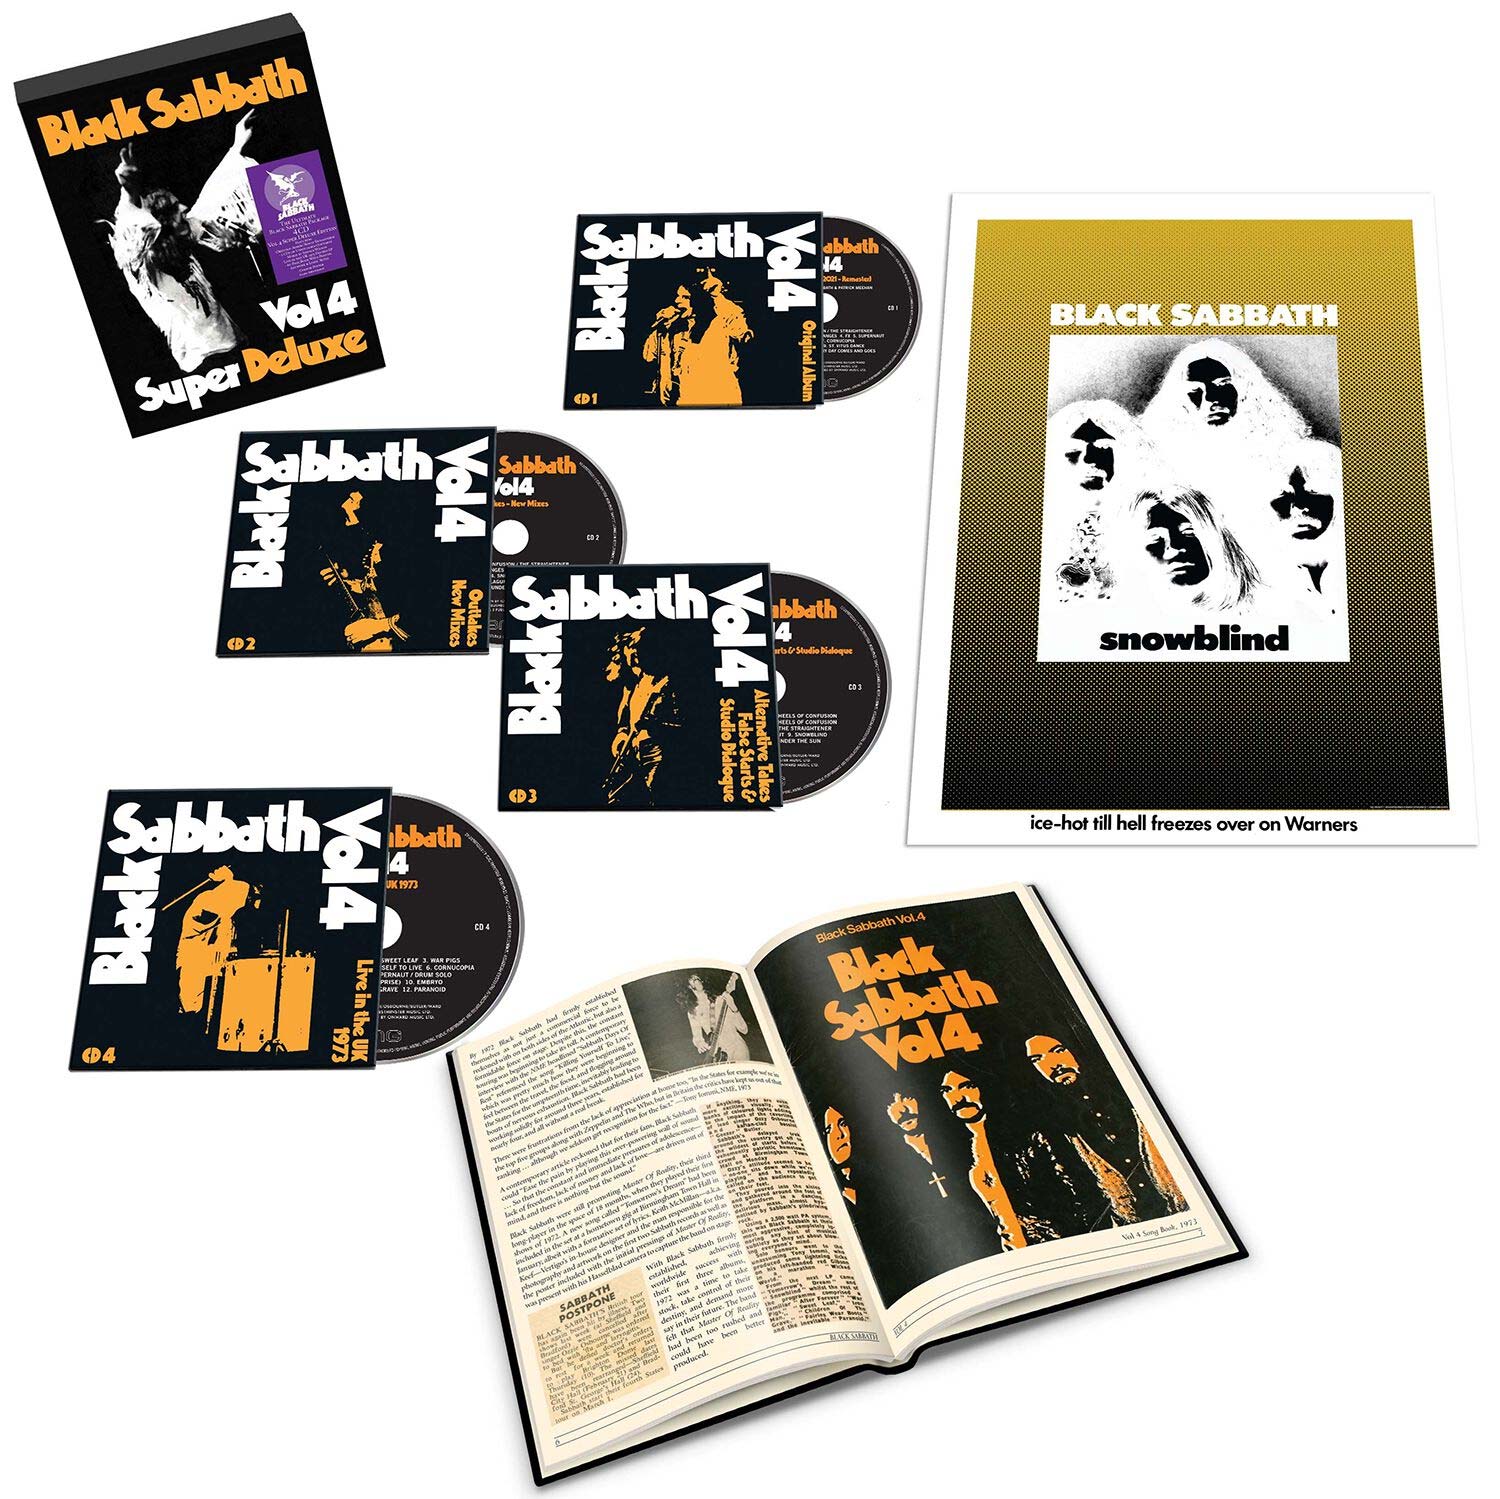 BLACK SABBATH lanza su clásico Vol. 4 en una edición 'super deluxe